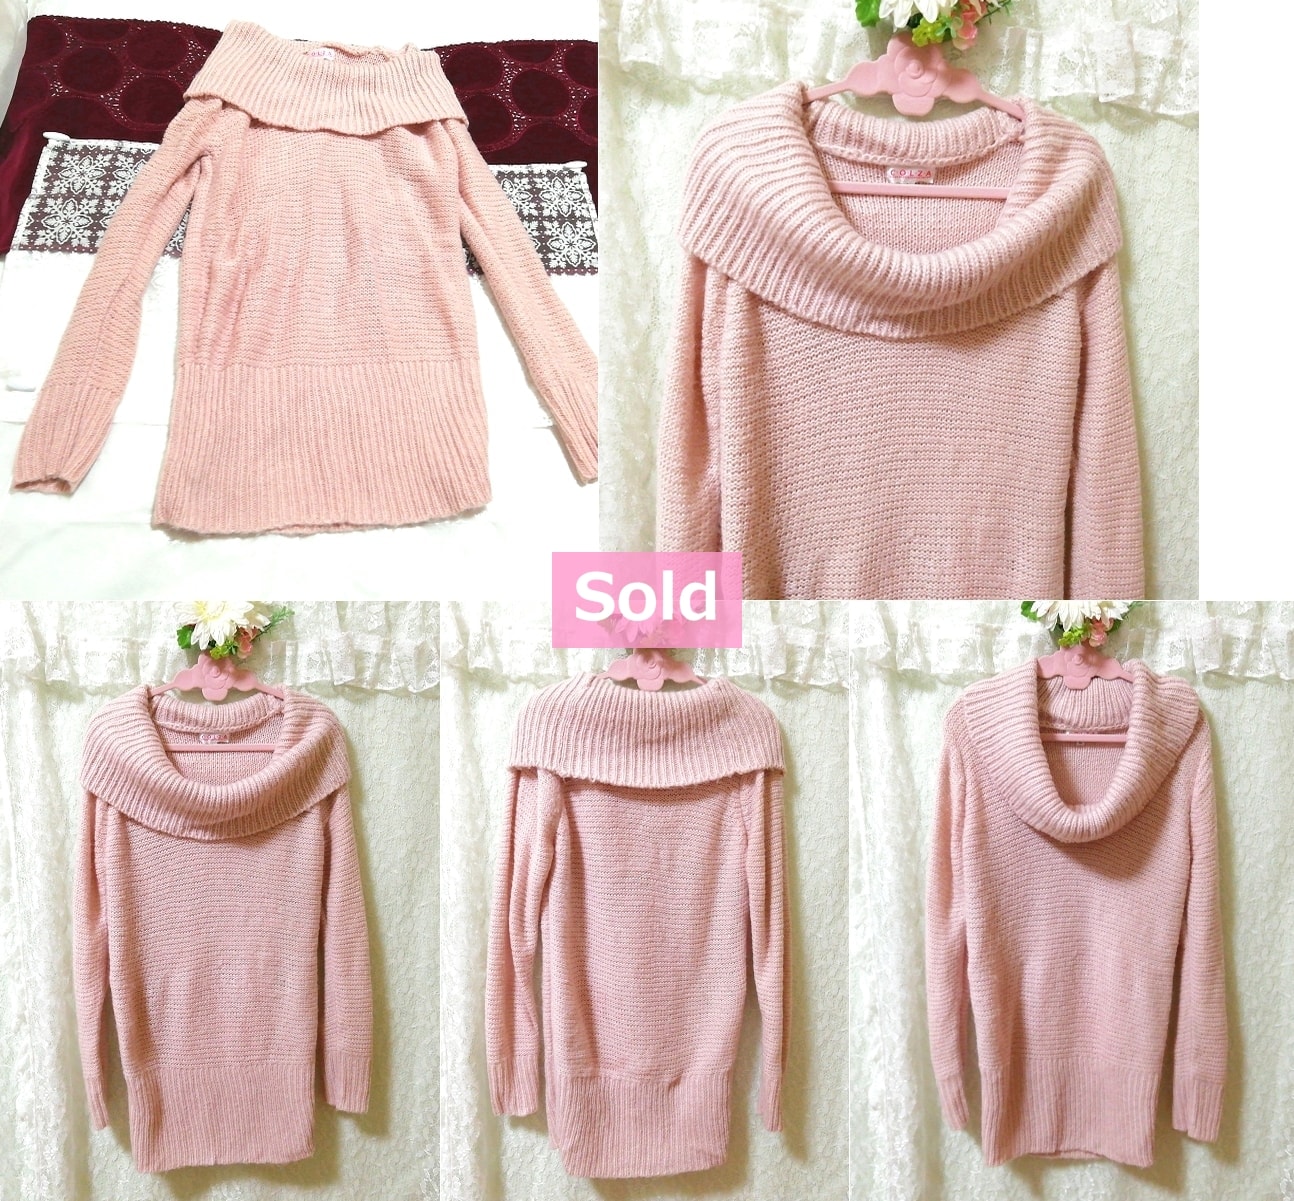 C・O・L・Z・A さくらピンクニットセーター Sakura Pink Knit Sweater, ニット、セーター, 長袖, Lサイズ